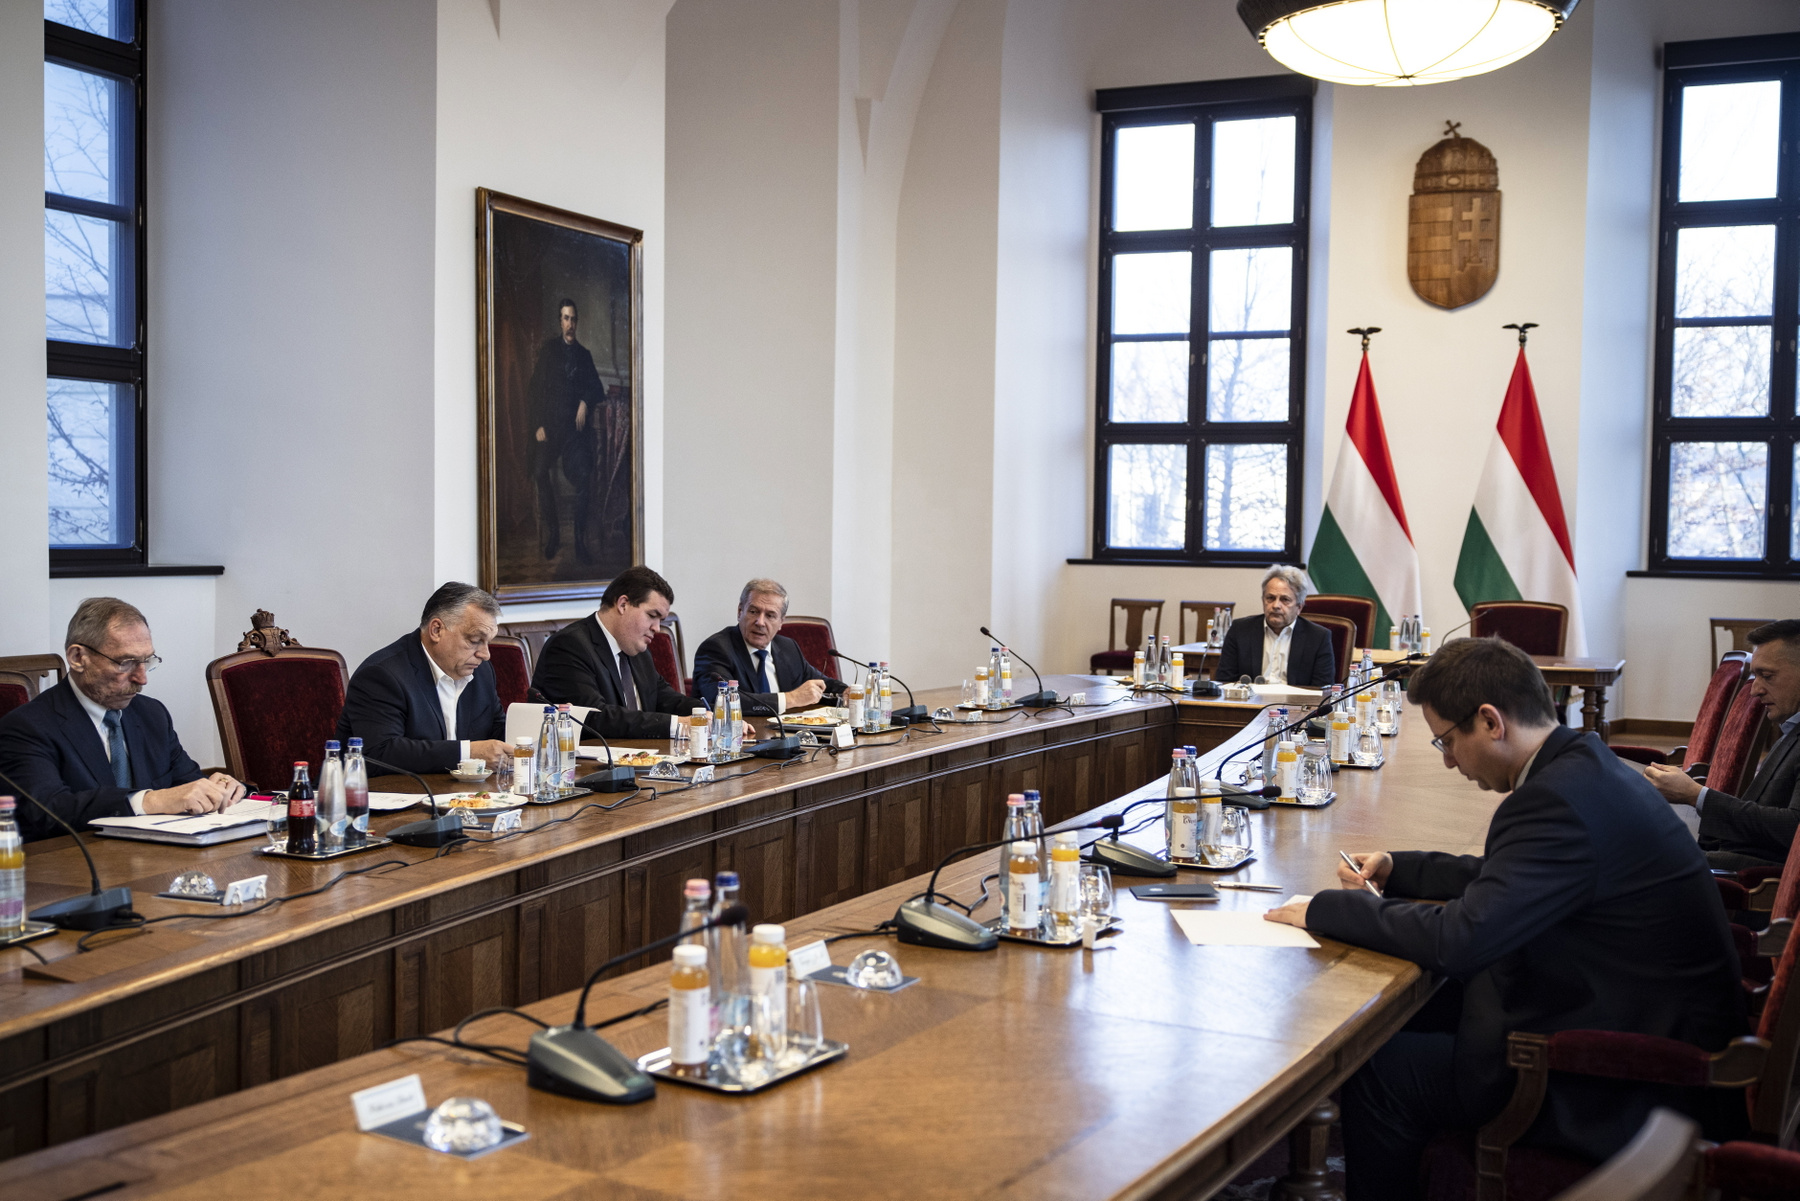 Orbán Viktor miniszterelnök a nemzetbiztonsági kabinet ülésén a Karmelita kolostorban 2022. február 22-én. A kormányfő vezetésével összeült a magyar kormány nemzetbiztonsági kabinetje az ukrán válsághelyzet áttekintése és a szükséges döntések meghozatala céljából